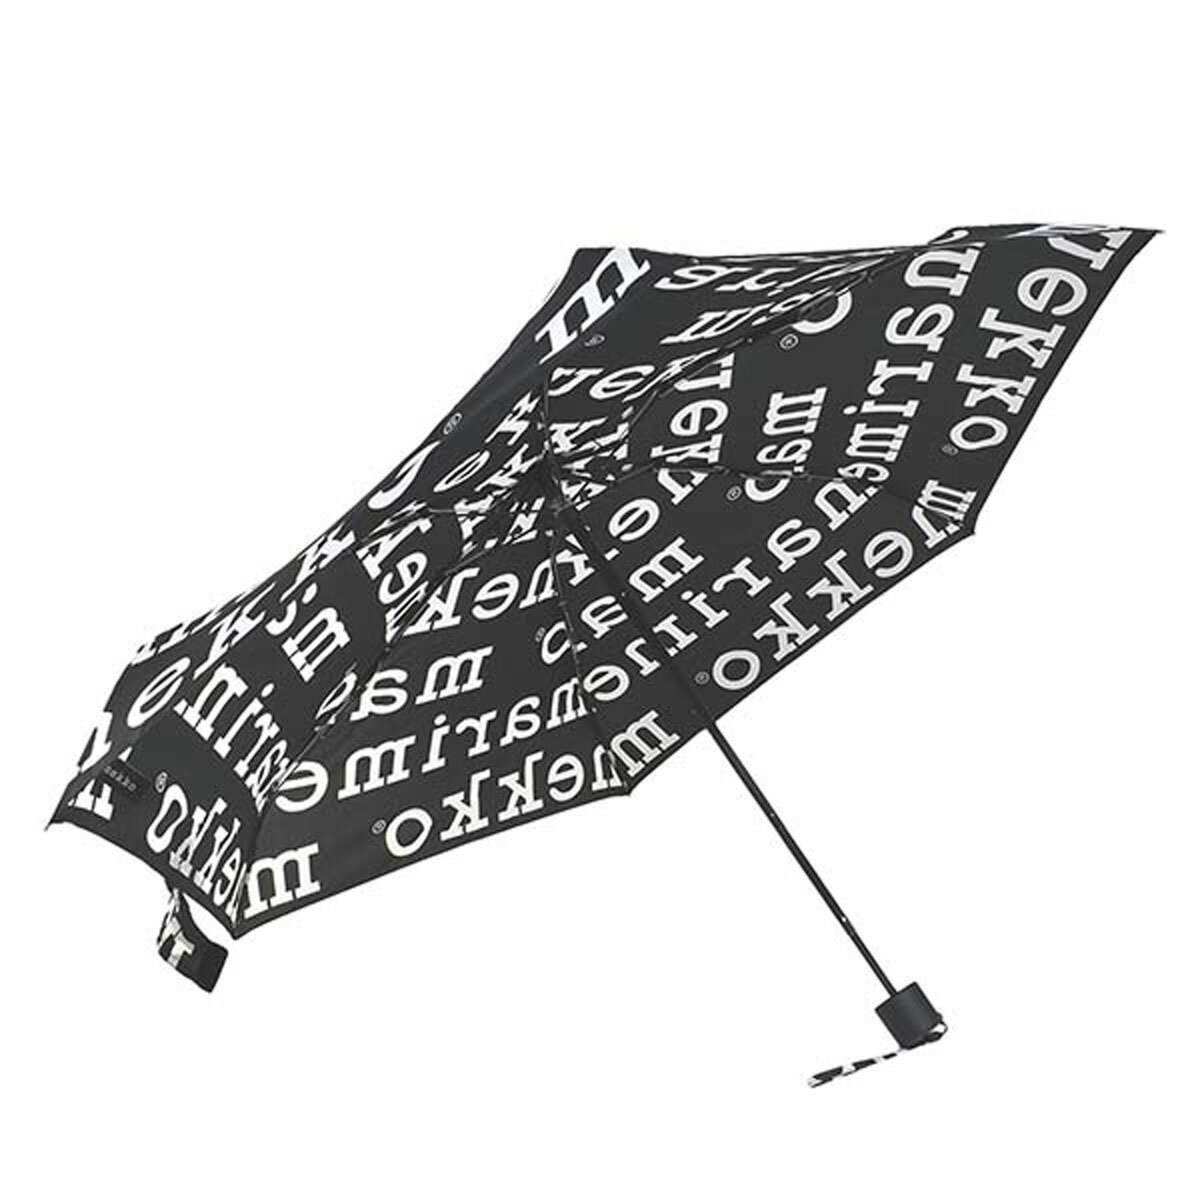 マリメッコ  マリメッコ marimekko 折りたたみ傘 傘 雨傘 折り畳み 048859 910 MINI MANUAL UMBRELLA ミニ マニュアル アンブレラ MARILOGO ブラック+ホワイト